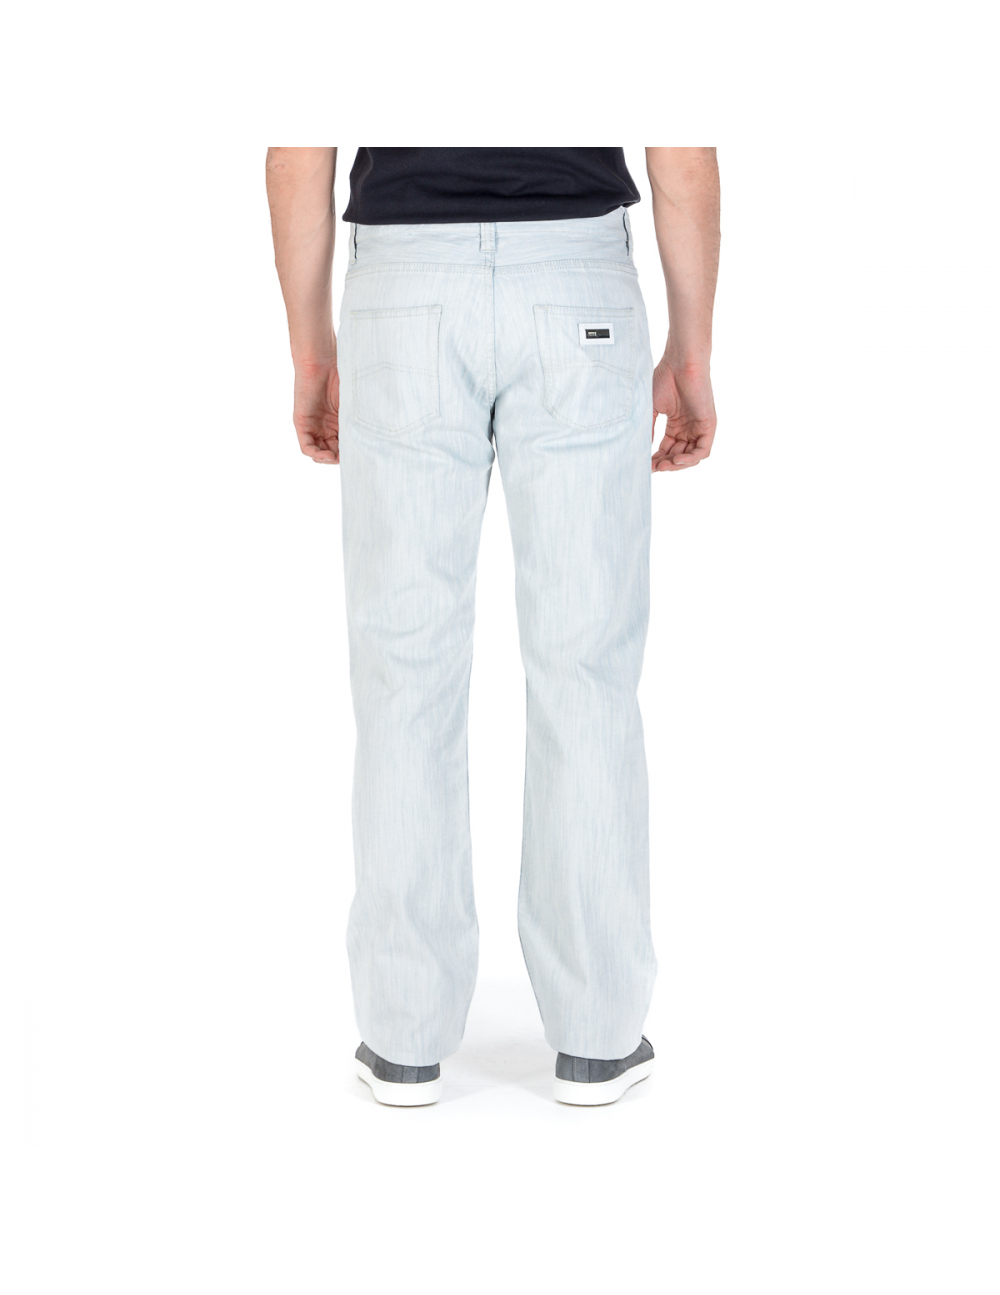 Armani Collezioni Mens Jeans White - YuppyCollections